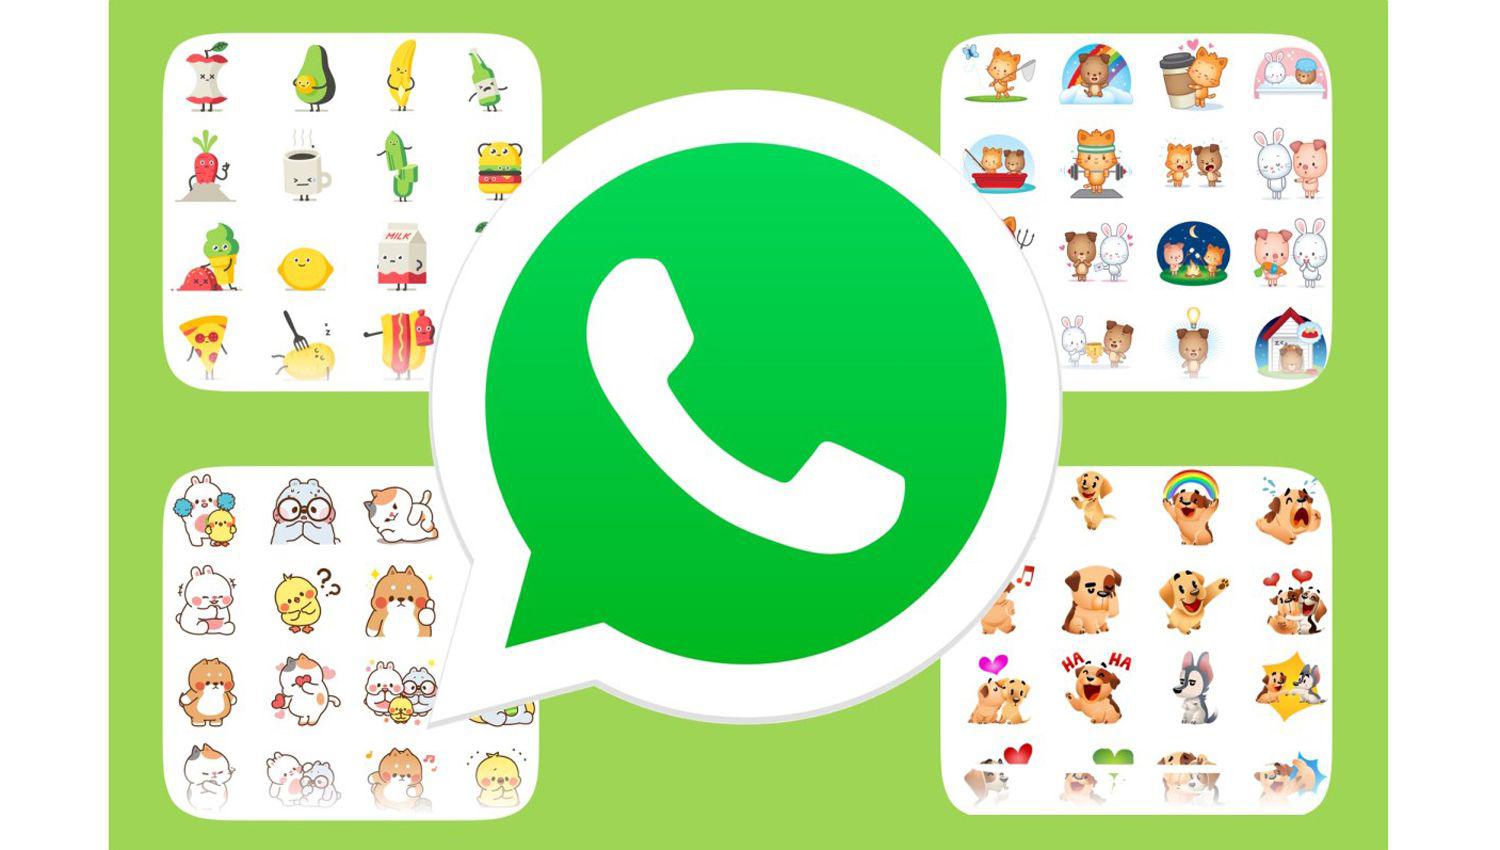 WhatsApp- coacutemo activar la nueva faacutebrica de stickers